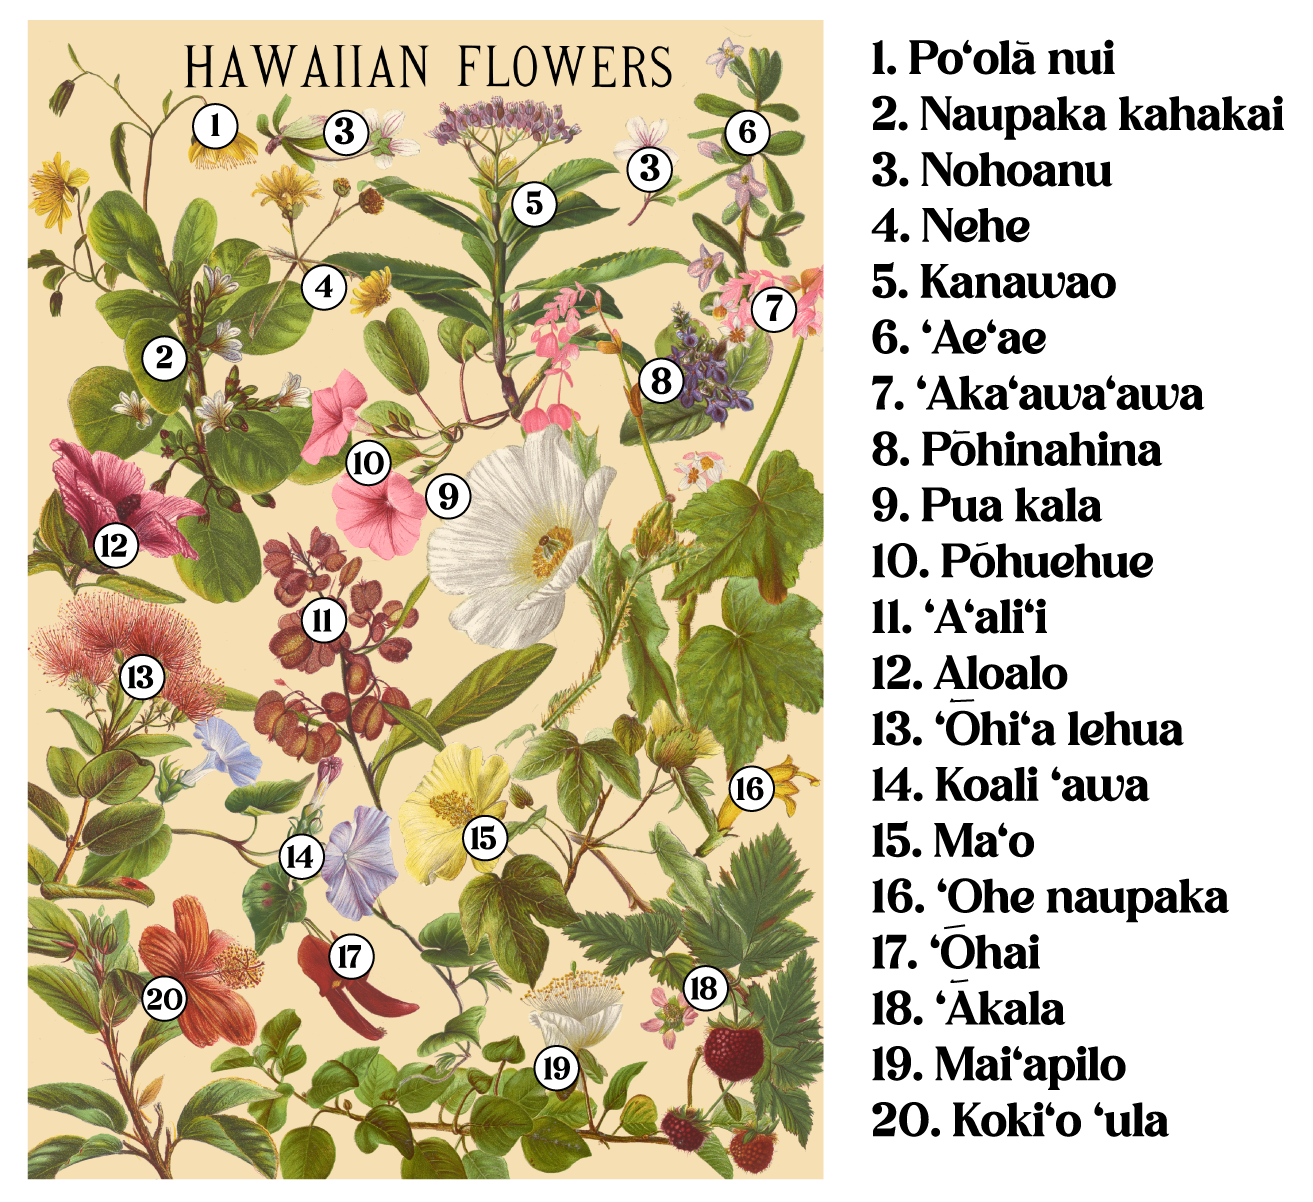 Hawaiian Flowers by Laulima Hawaiʻi